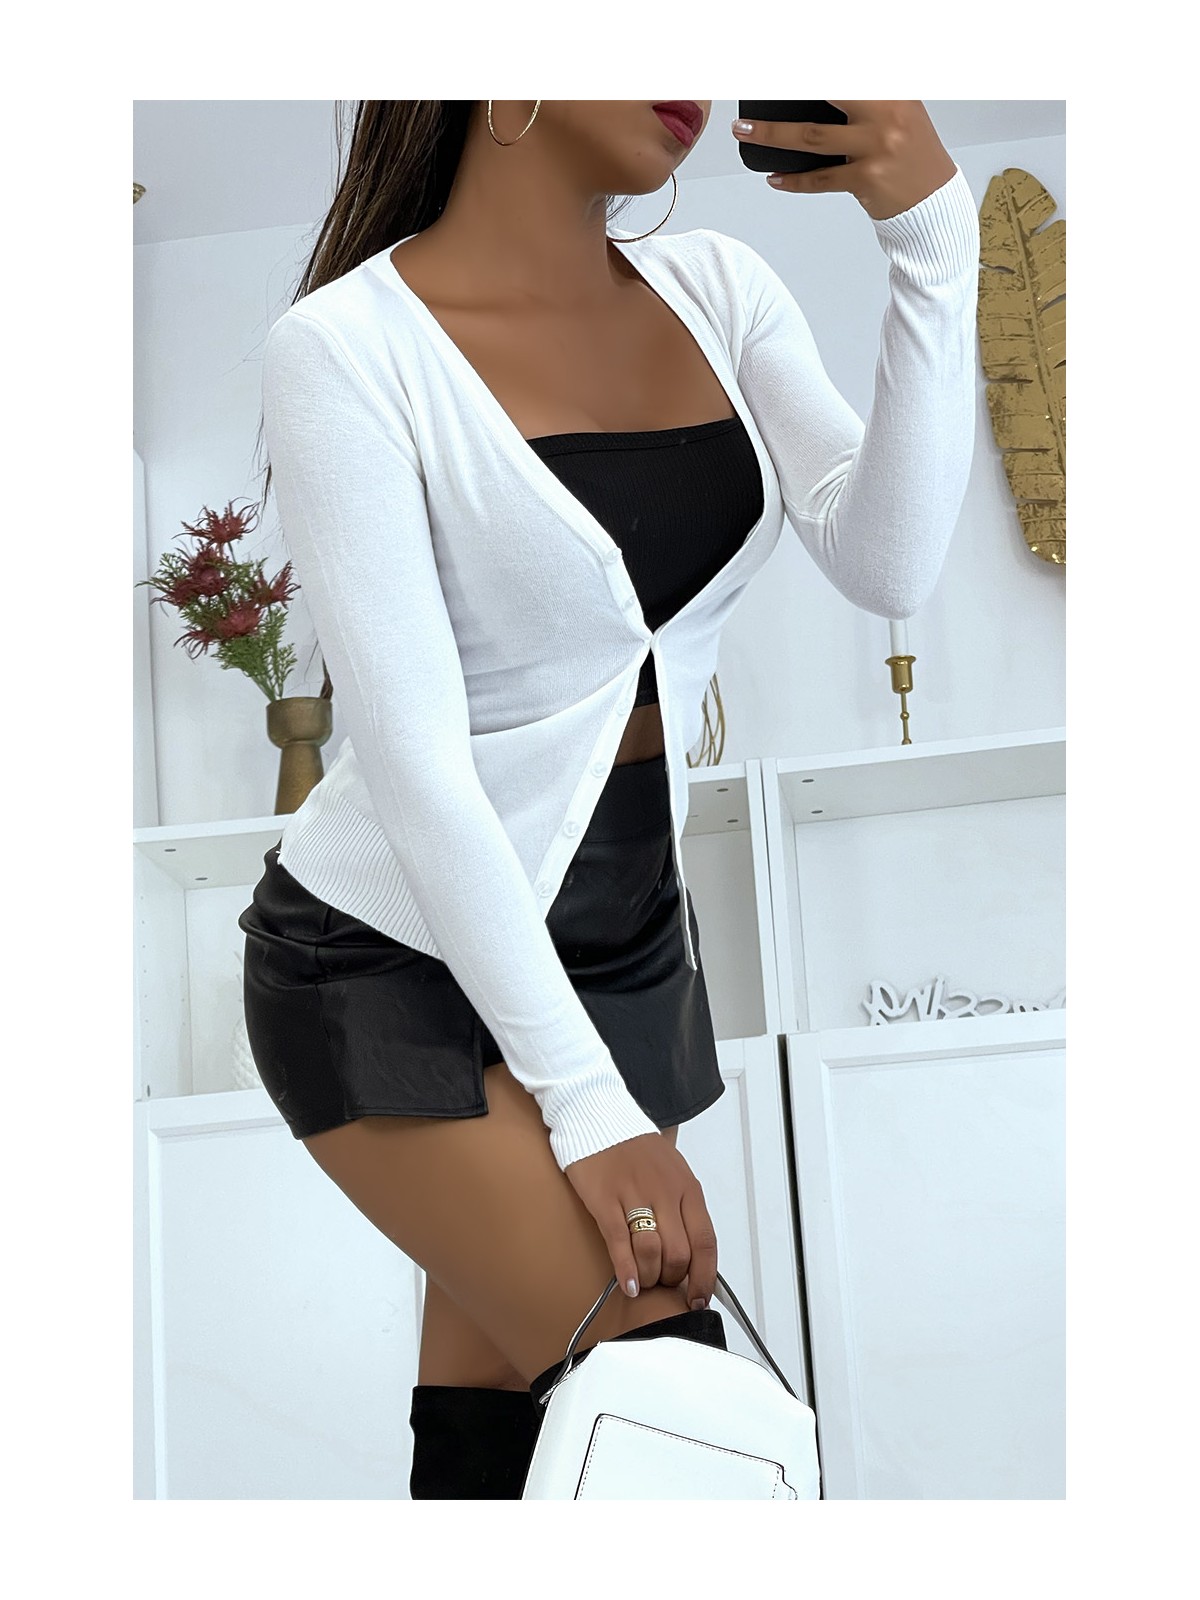 Gilet blanc en maille tricot très extensible et très doux - 2